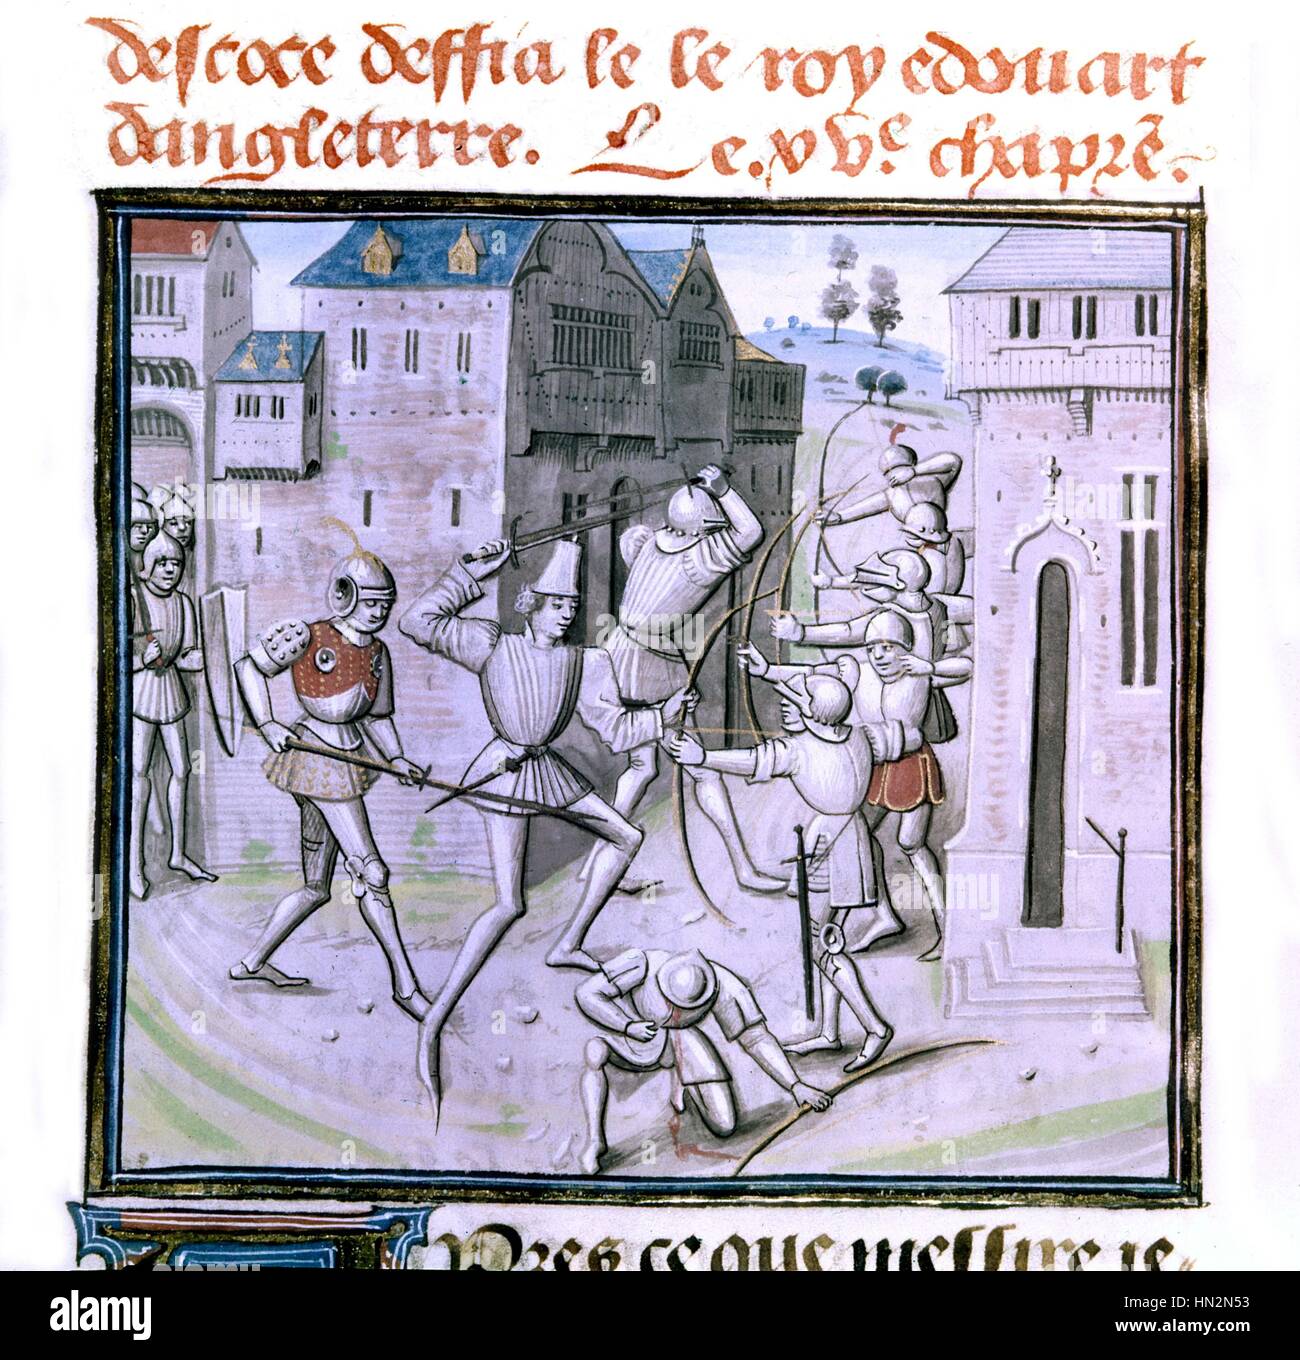 Chroniques de Froissart, roi d'Écosse de défier le roi Édouard d'Angleterre 15e siècle France Paris. Bibliothèque de l'arsenal Banque D'Images